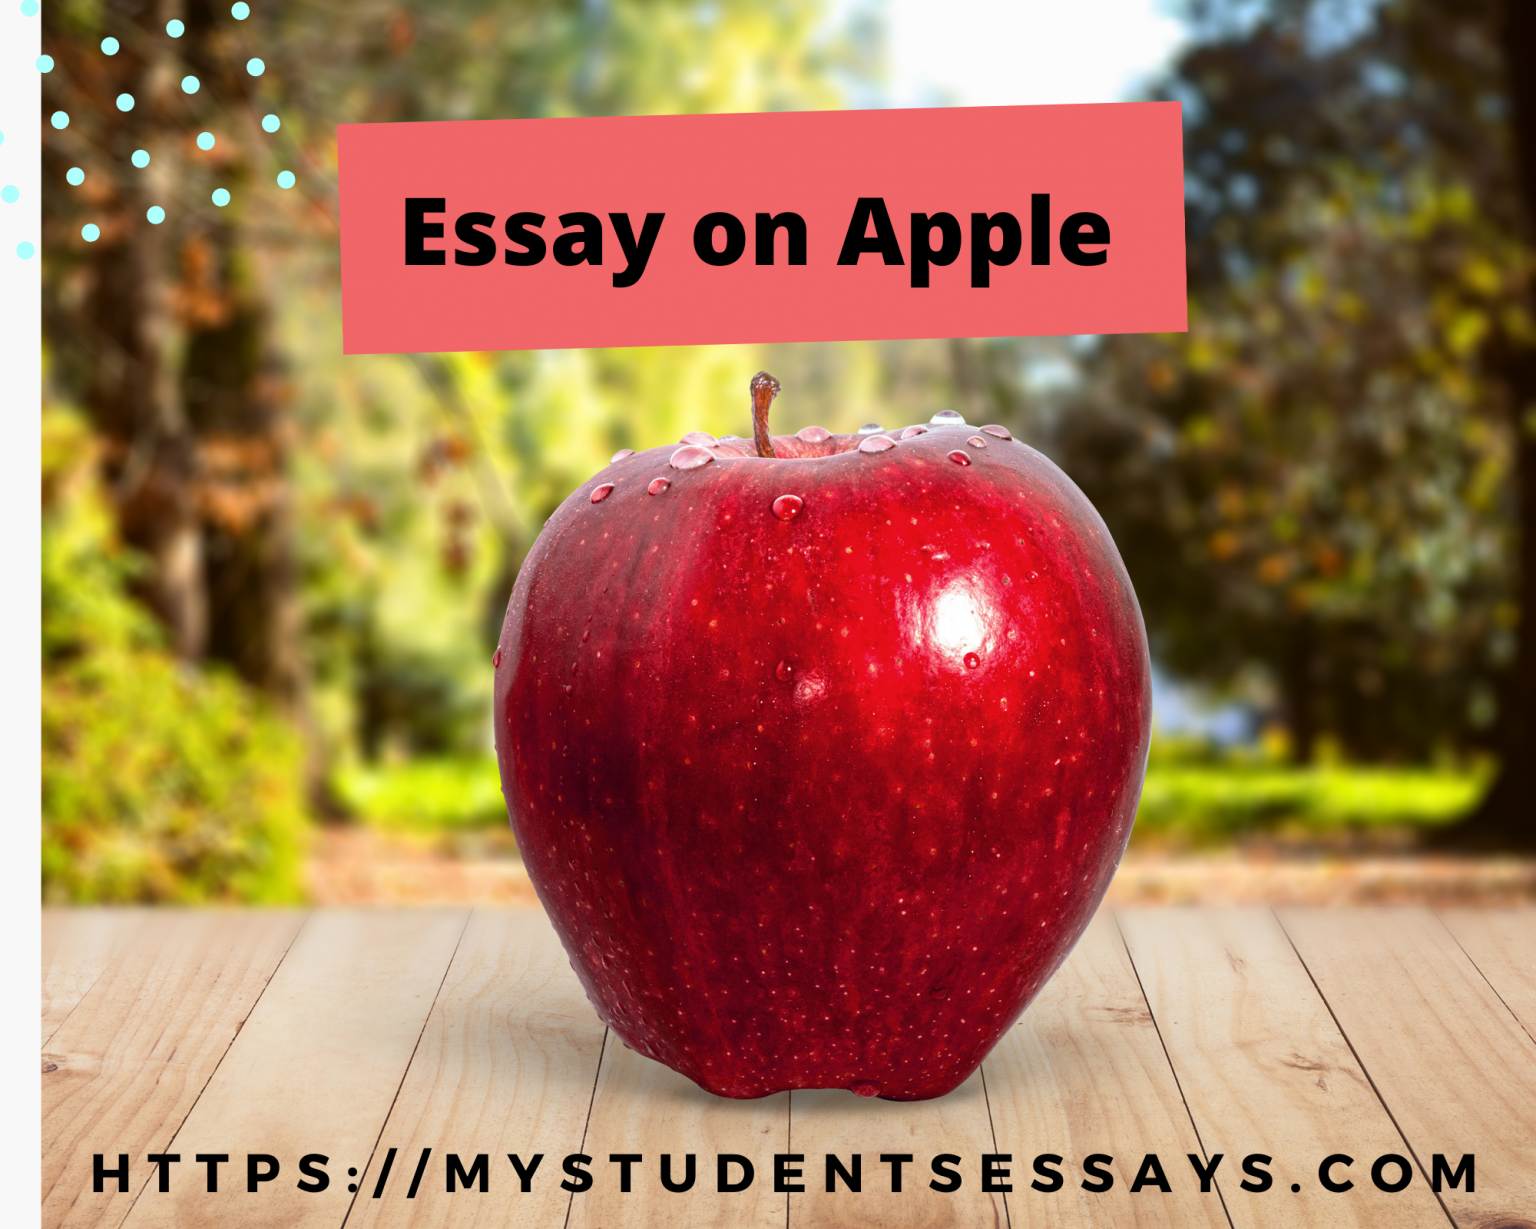 essay on apple tree